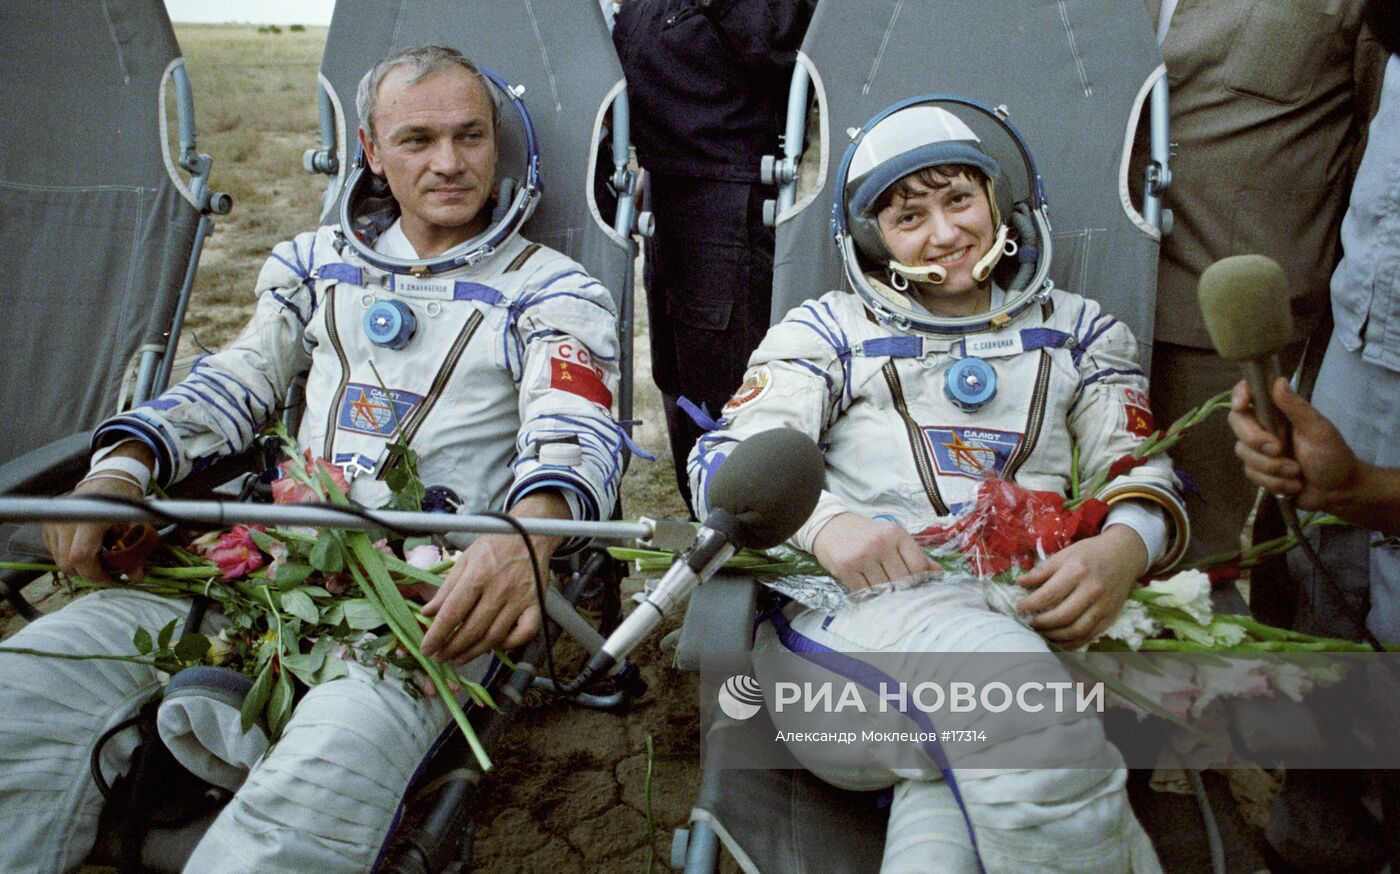 Второй космонавт вышедший в открытый космос. Джанибеков и Савицкая сварка в космосе.